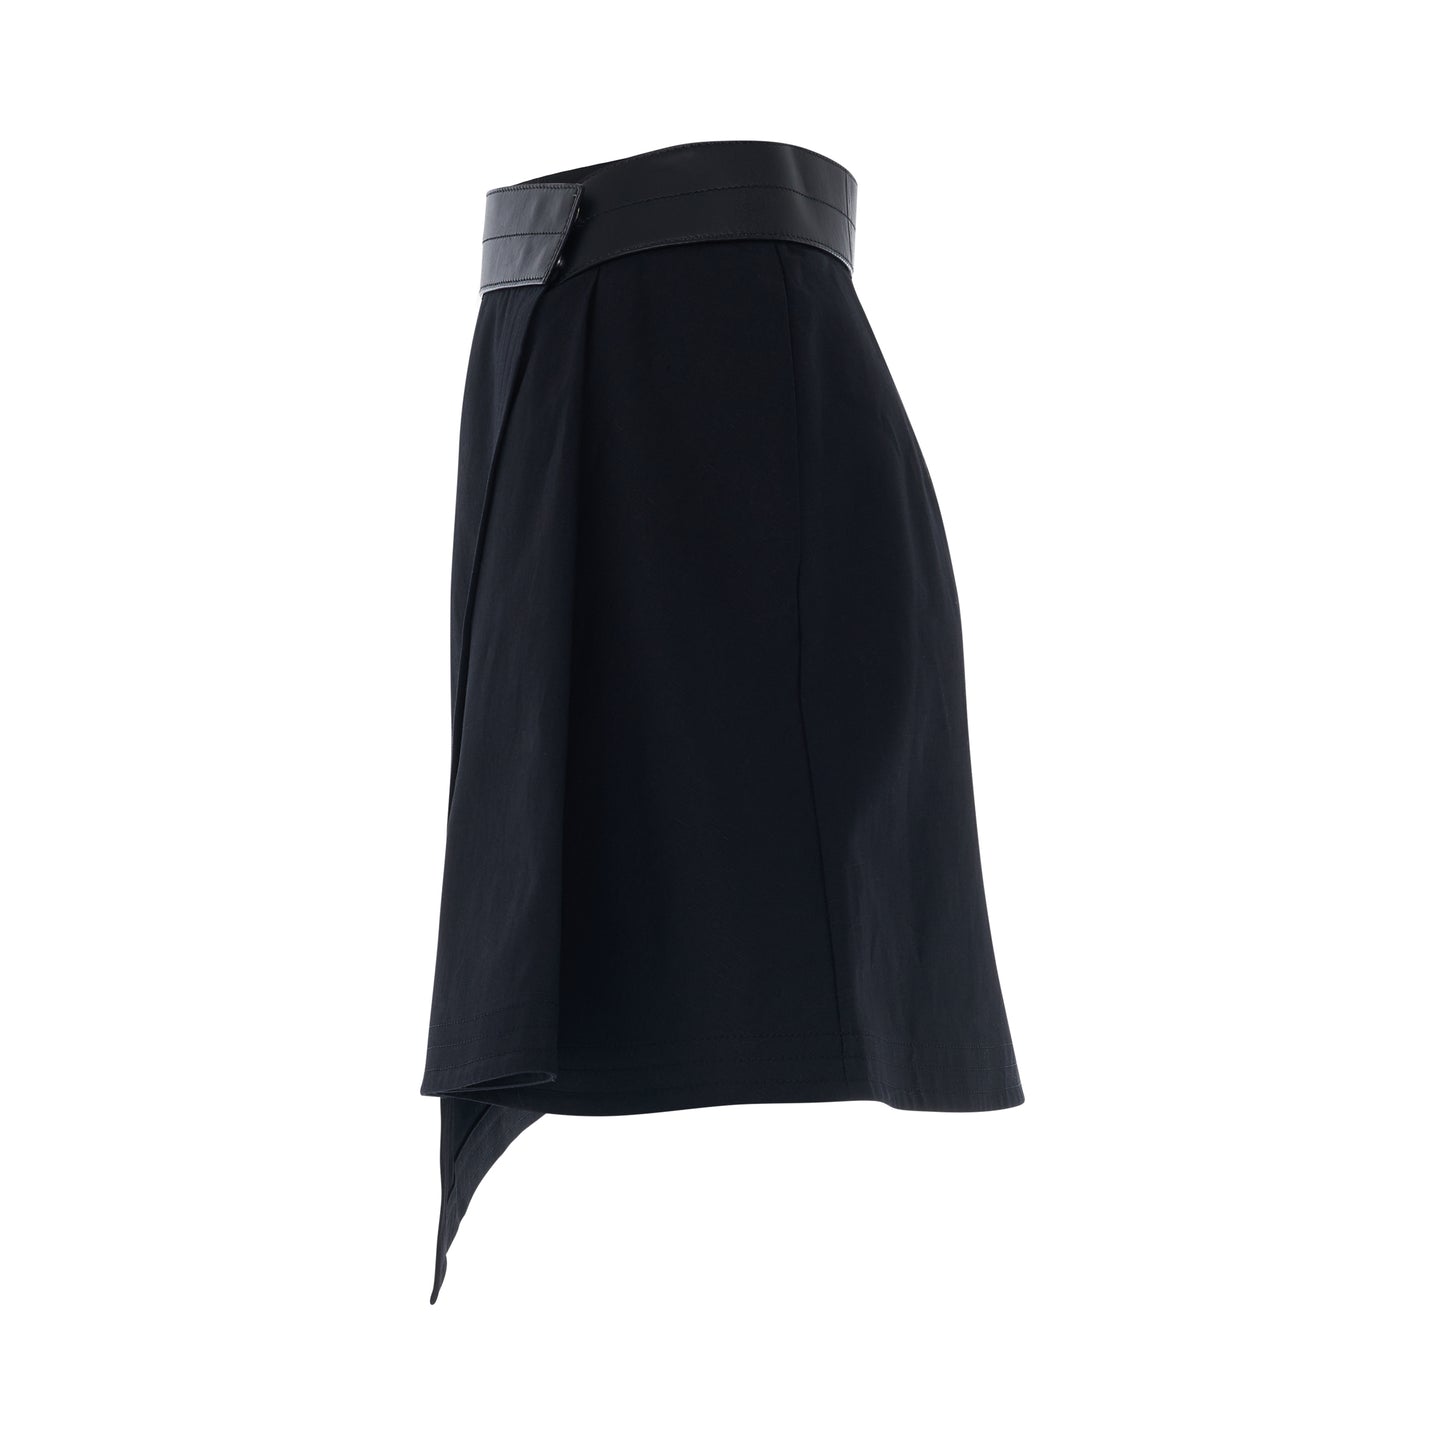 Trap Mini Skirt in Black